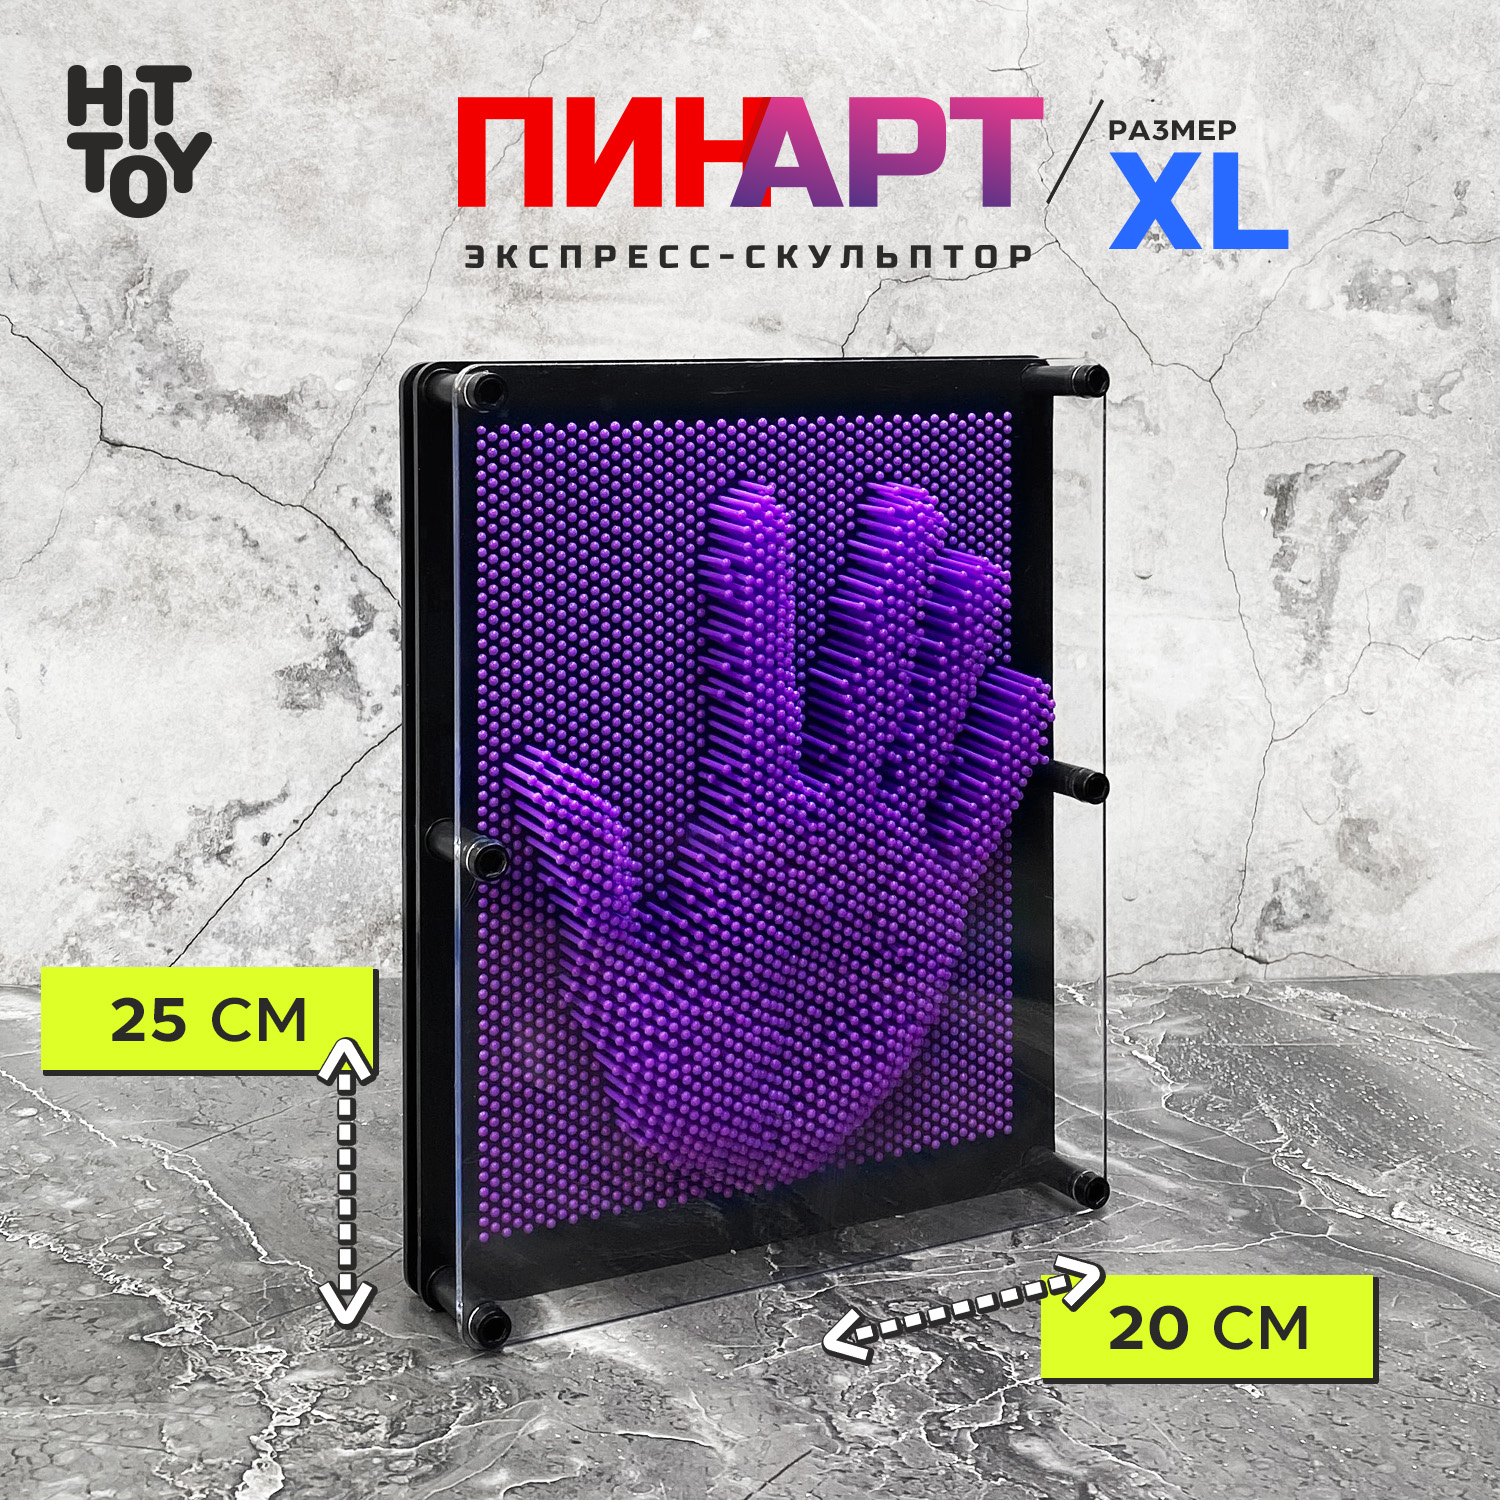 Игрушка-антистресс HitToy Экспресс-скульптор Pinart Классик XL фиолетовый - фото 1